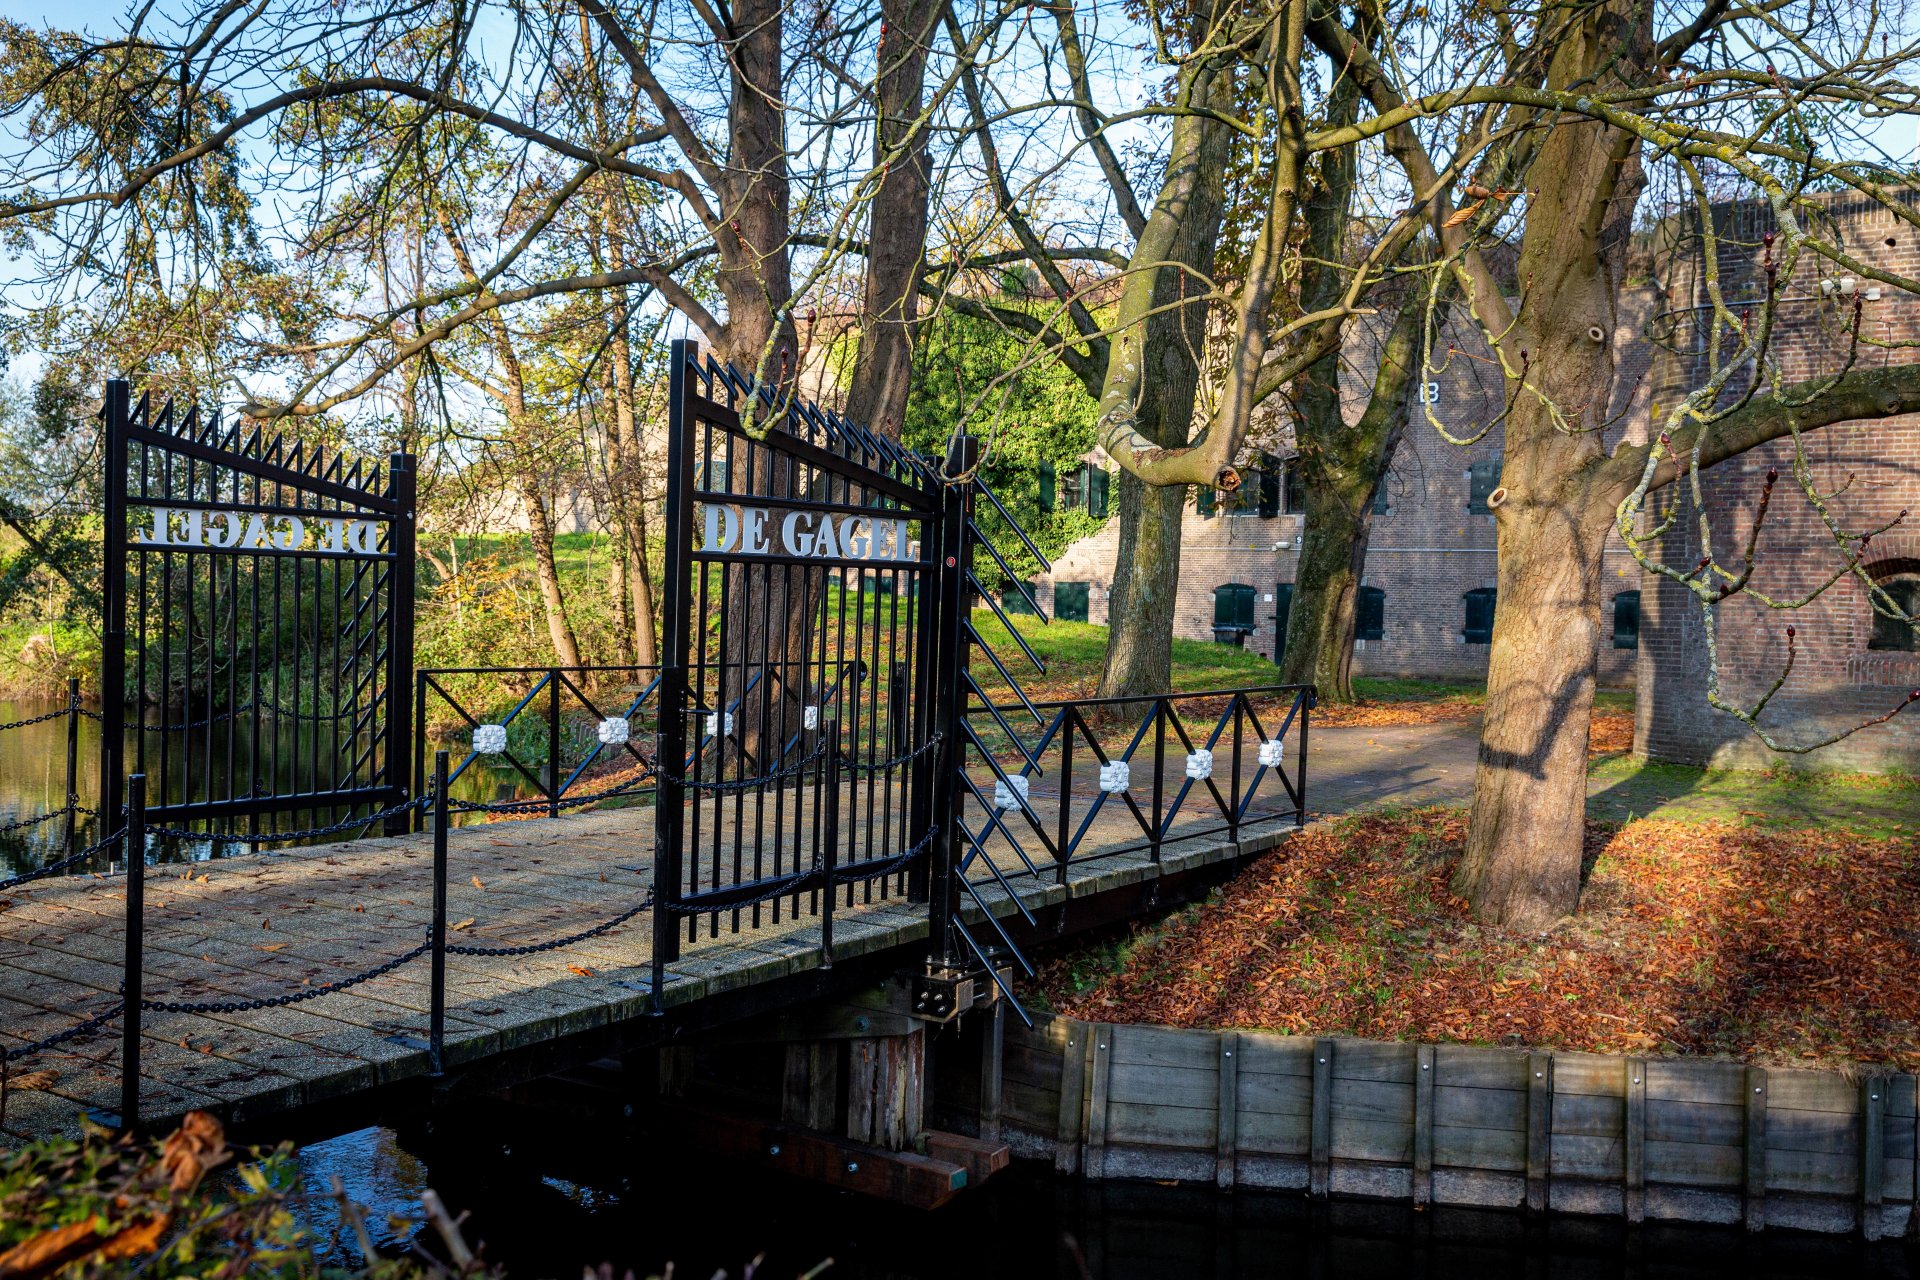 Entree van Fort de Gagel in Utrecht met een zwart metalen hek